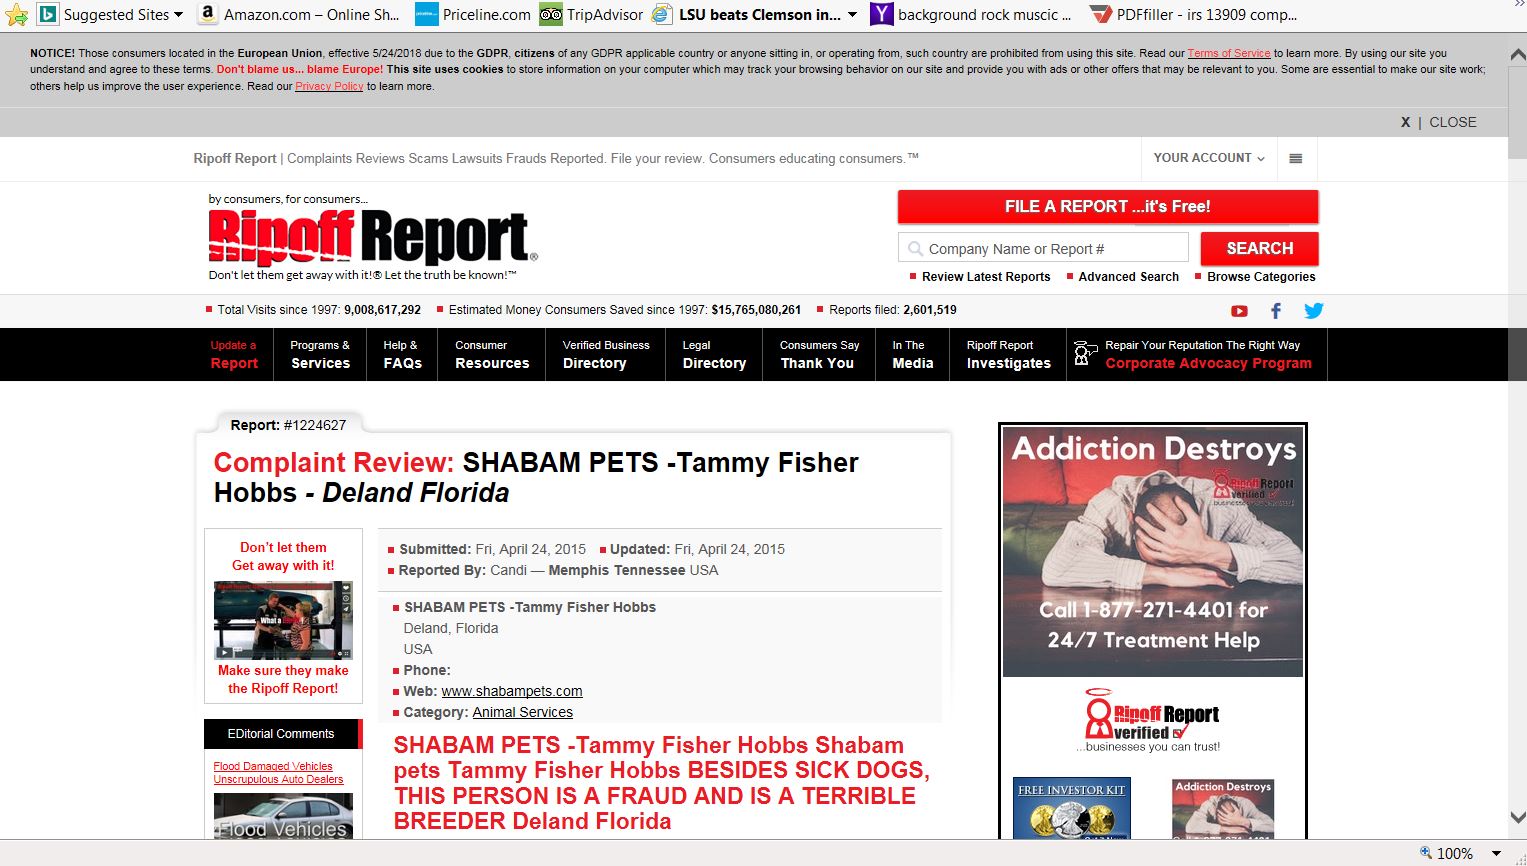 Brenda Fisher shambam pets Report #1224627-1